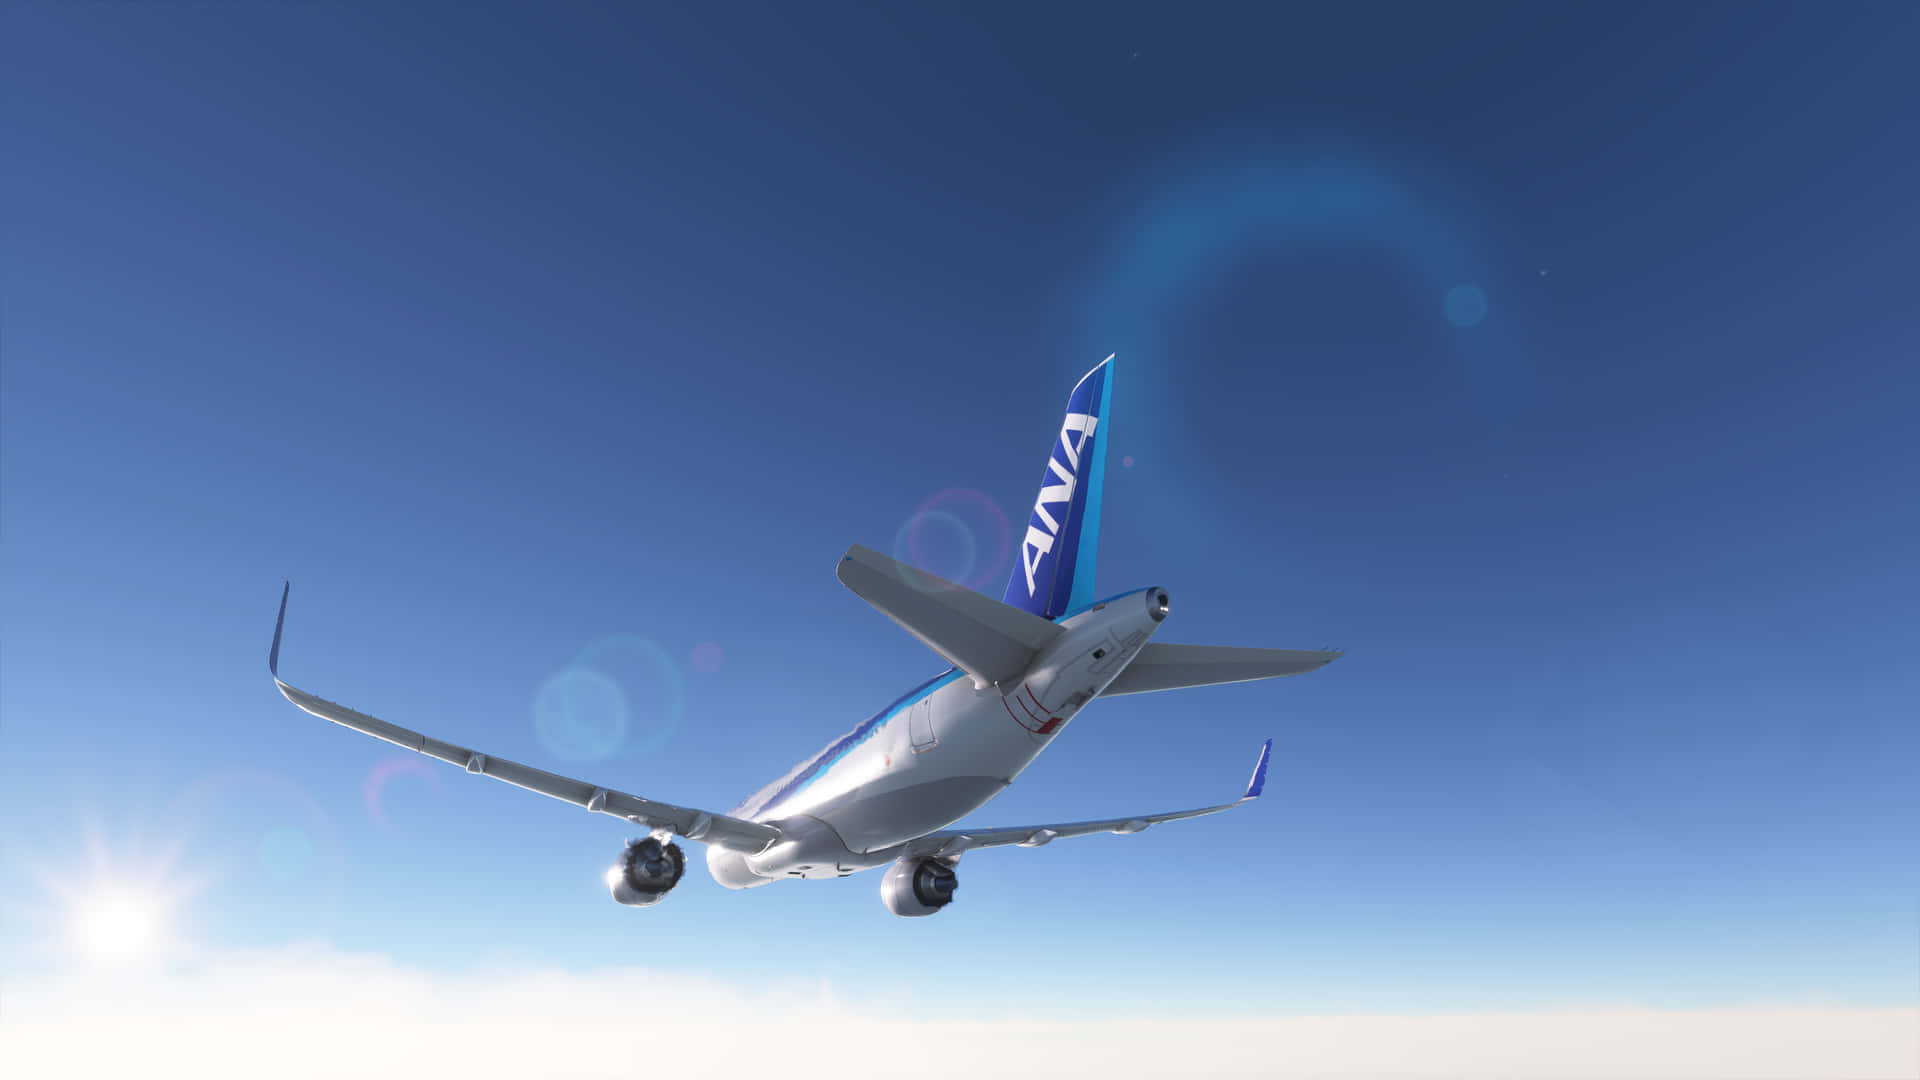 4kmicrosoft Flight Simulator Bakgrundsbild Med 3d-modell Av Flygplan